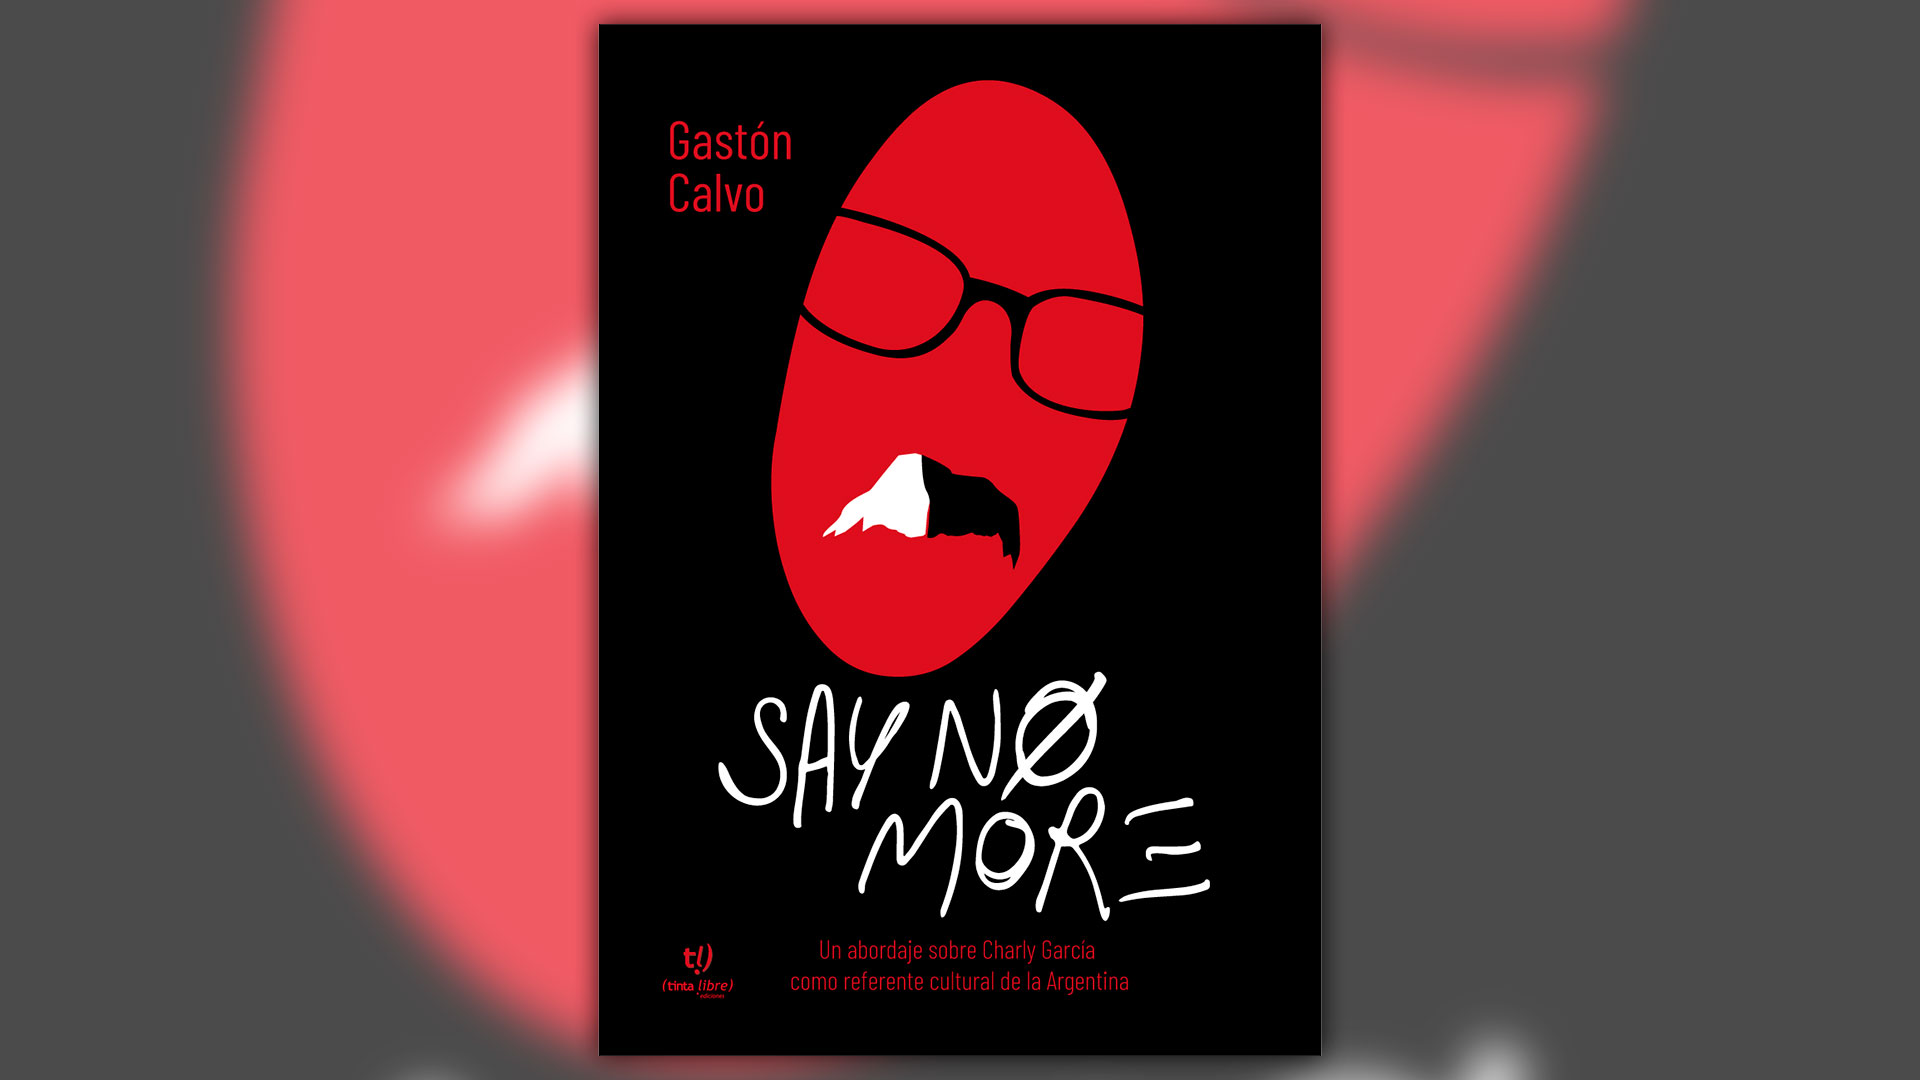 Gastón Calvo es autor de "Say no more", un libro que intenta descifrar el vínculo entre García y su contexto social y cultural.